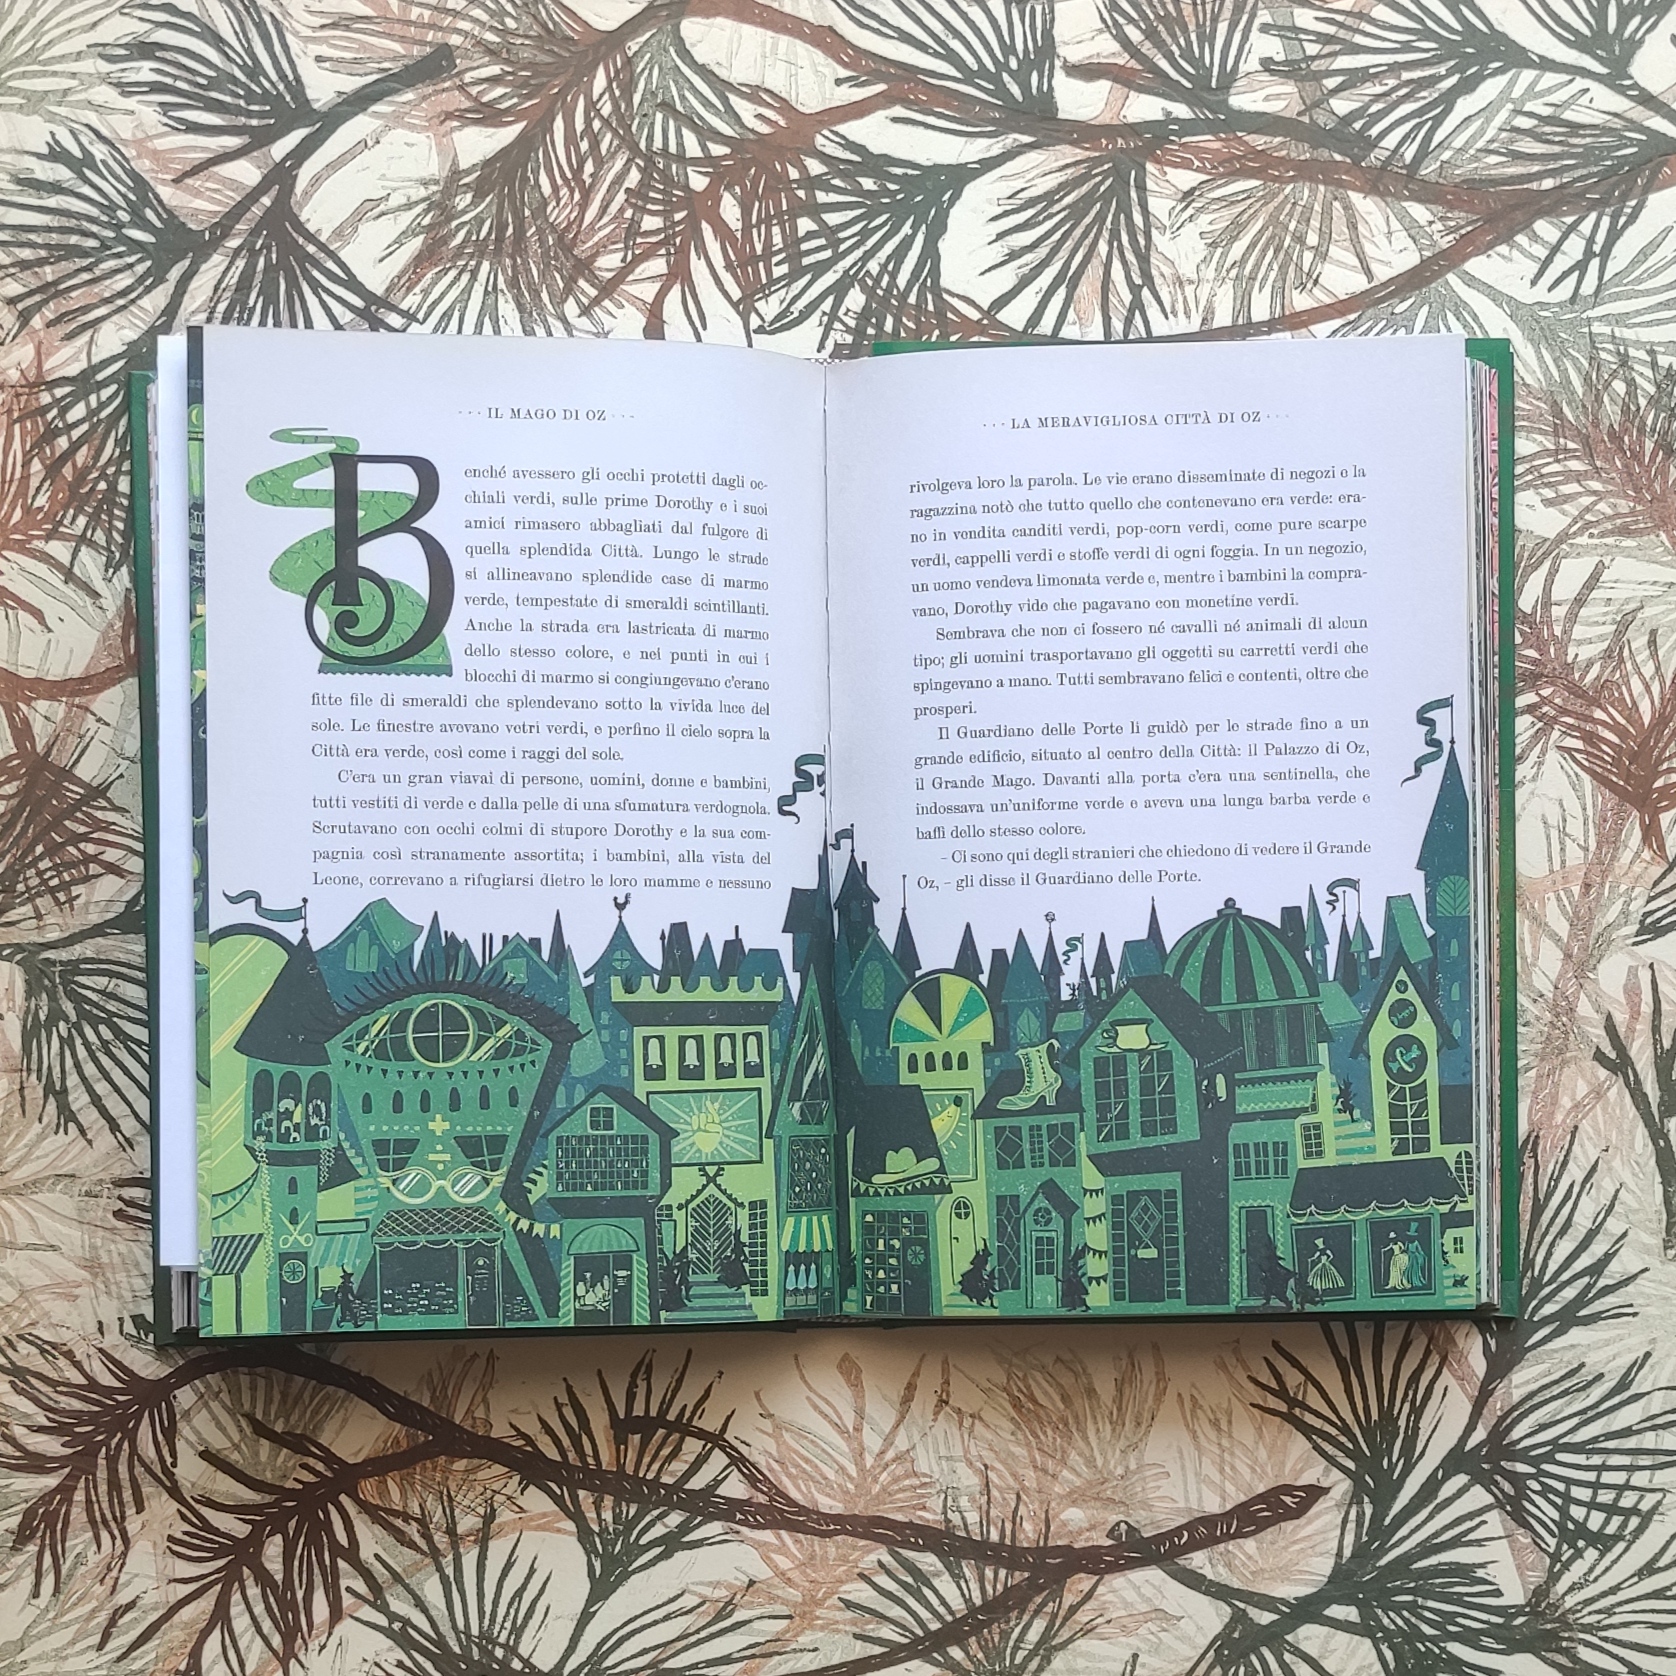 Il meraviglioso mago di Oz - Libreria per bambini Radice Labirinto - Carpi,  Modena